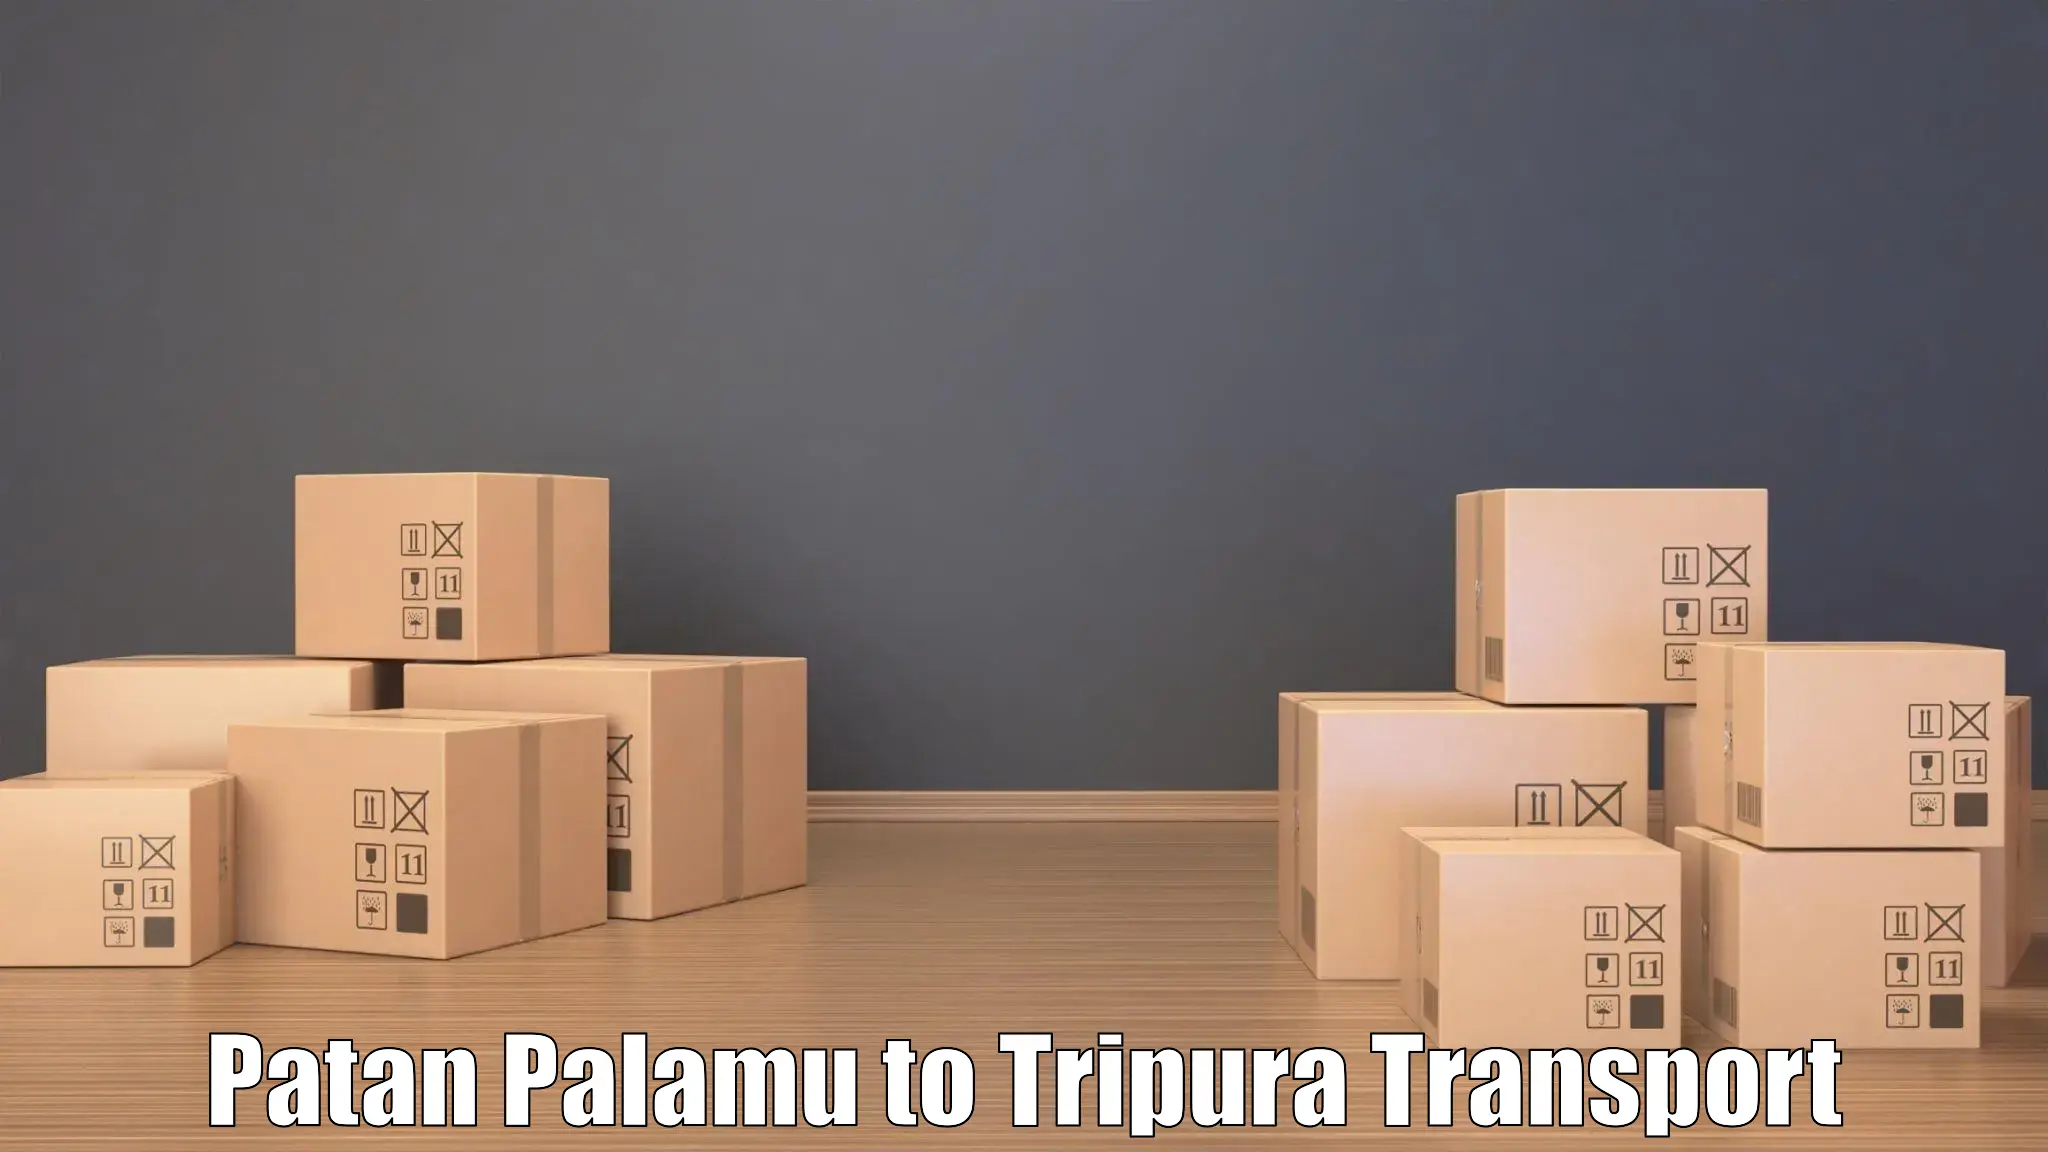 Lorry transport service Patan Palamu to Ambassa